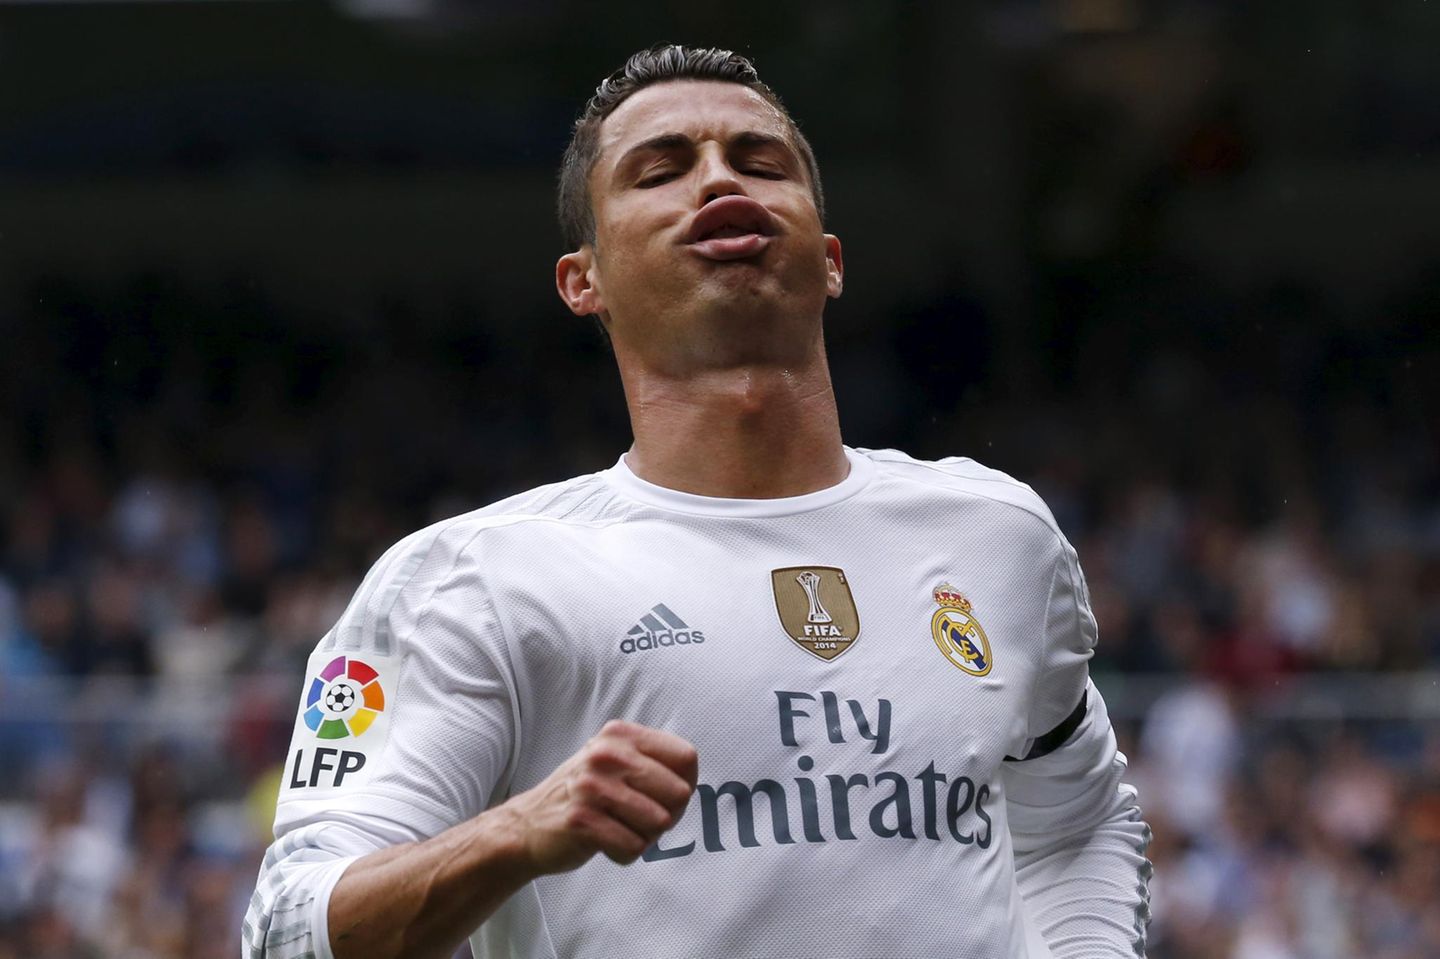 Erst einmal durchpusten: Cristiano Ronaldo zeigt während eines Fußballspiels Emotionen.